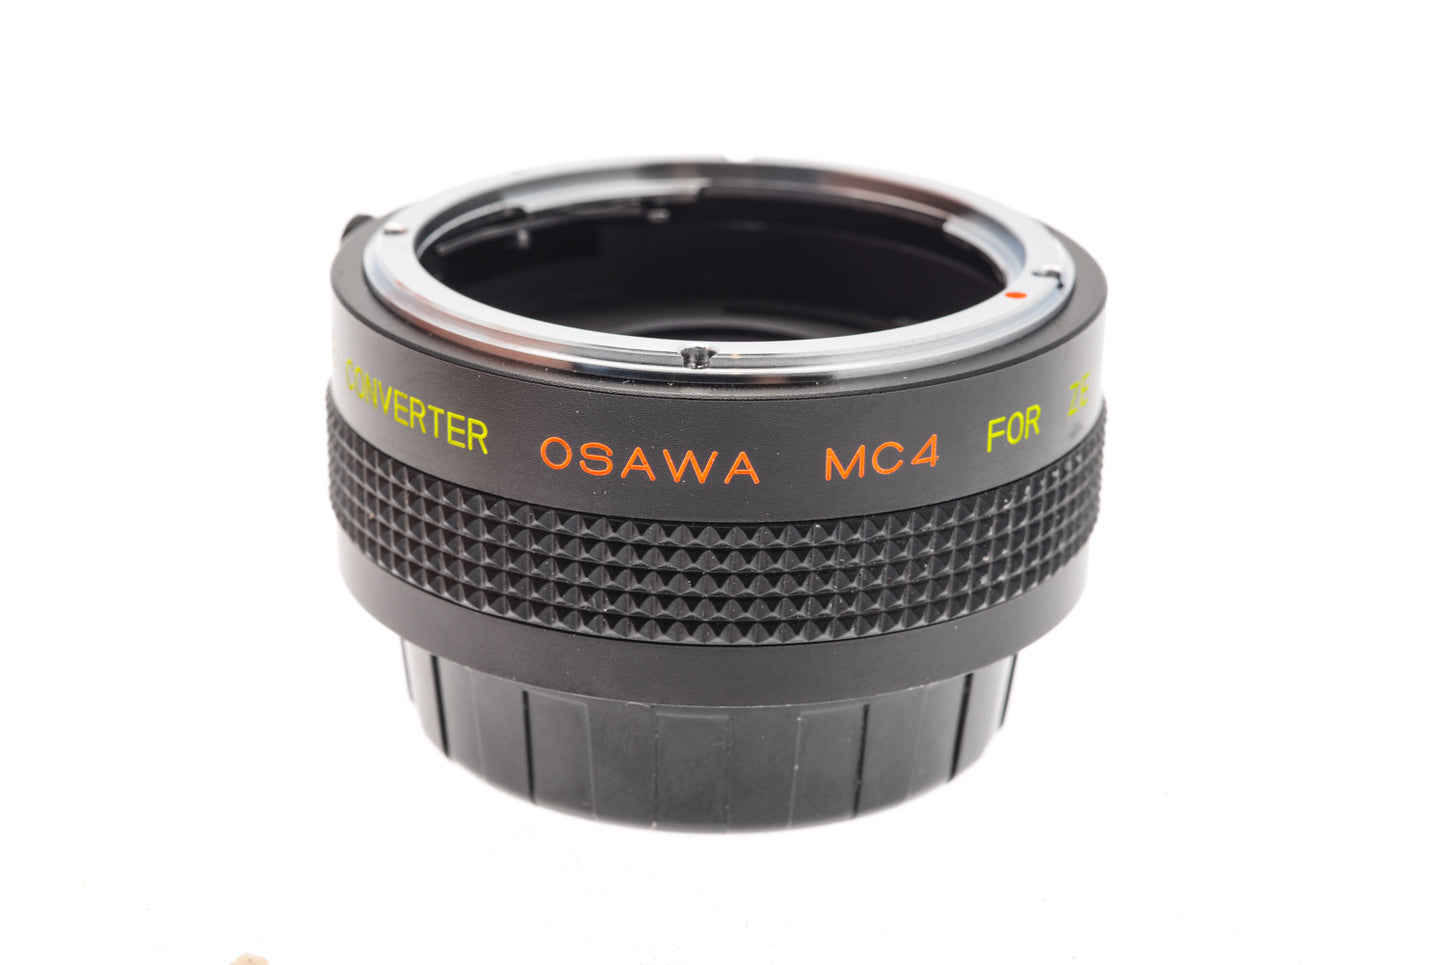 Osawa MC4 2x Teleconverter - Accessory